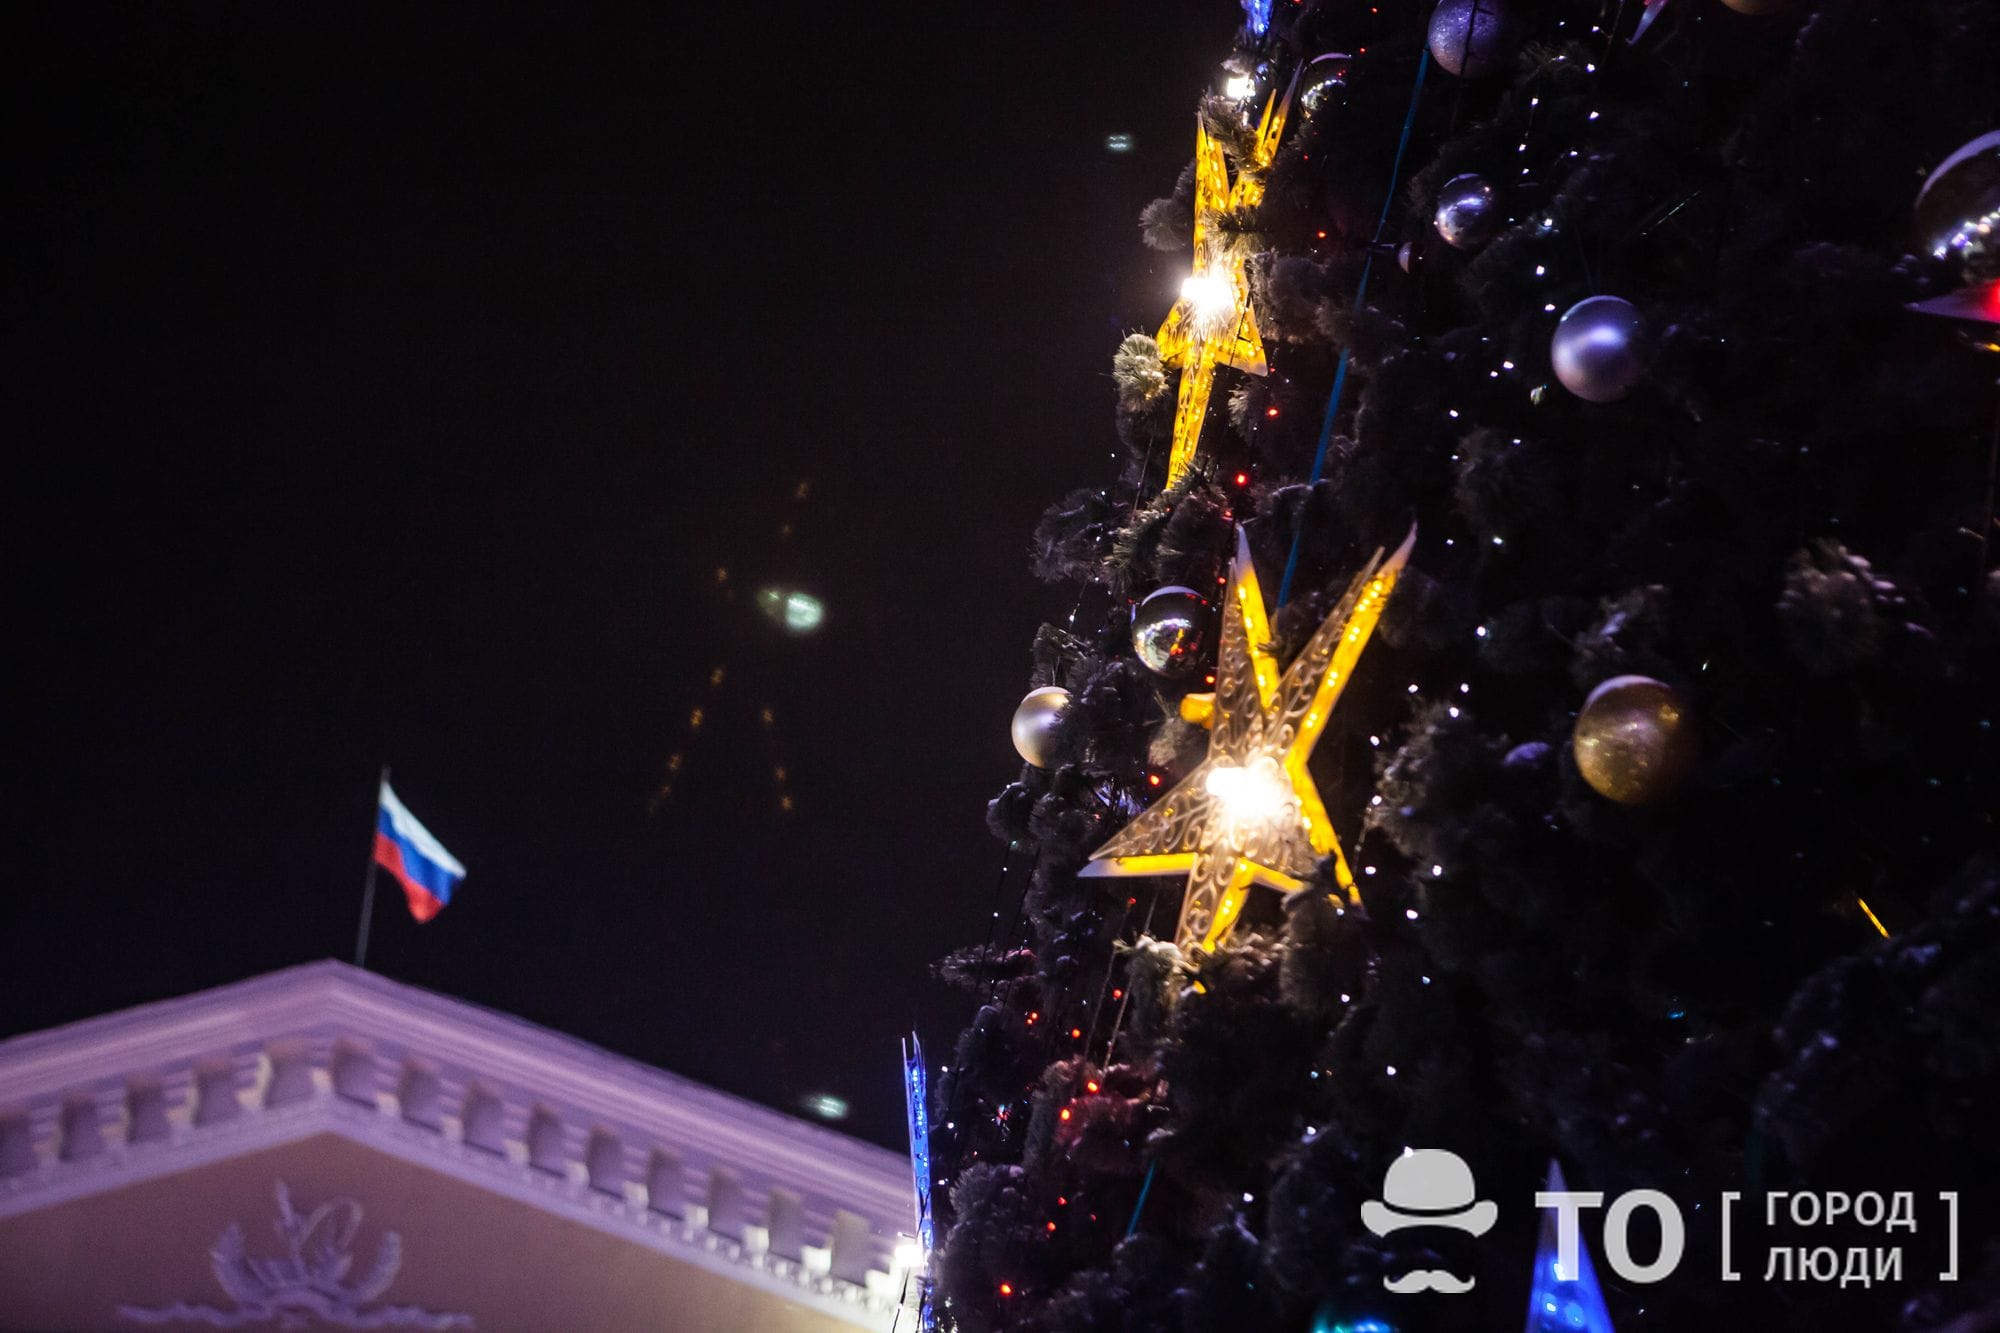 Новый год ❄, Праздники, Томские новости, новый год выходные новогодние каникулы томские новости интересное праздники Сколько будут длиться новогодние каникулы в Томске